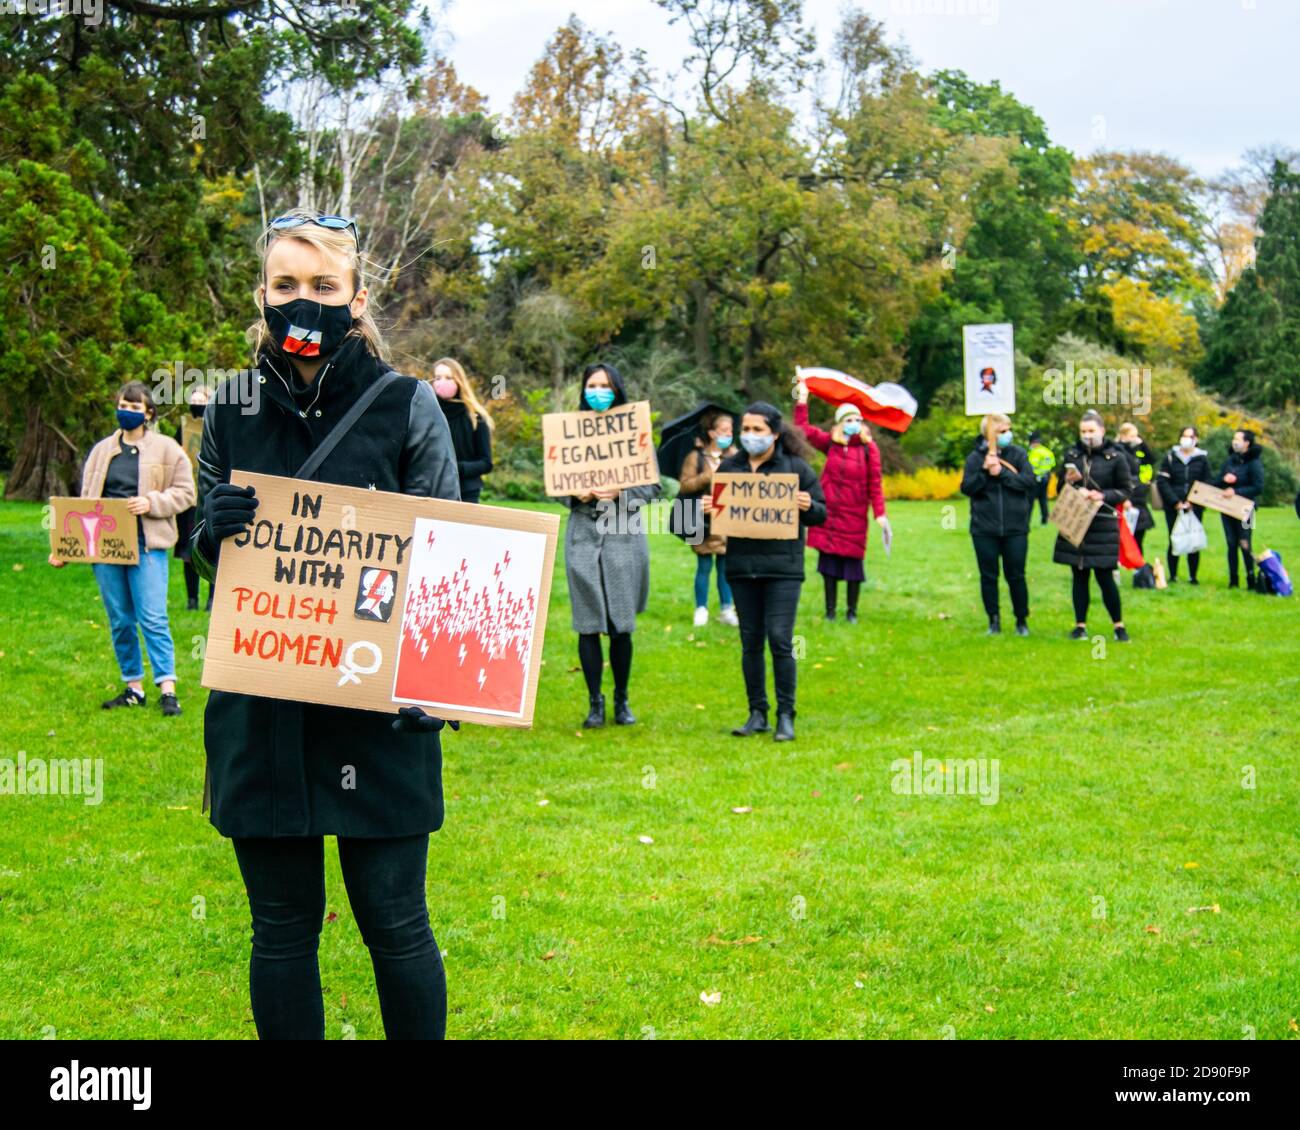 Oxford, Royaume-Uni - 1er novembre 2020 : manifestation pro-choix de la Pologne à l'université Parks Oxford, les personnes protestant contre la loi anti-avortement ont été jugées Banque D'Images